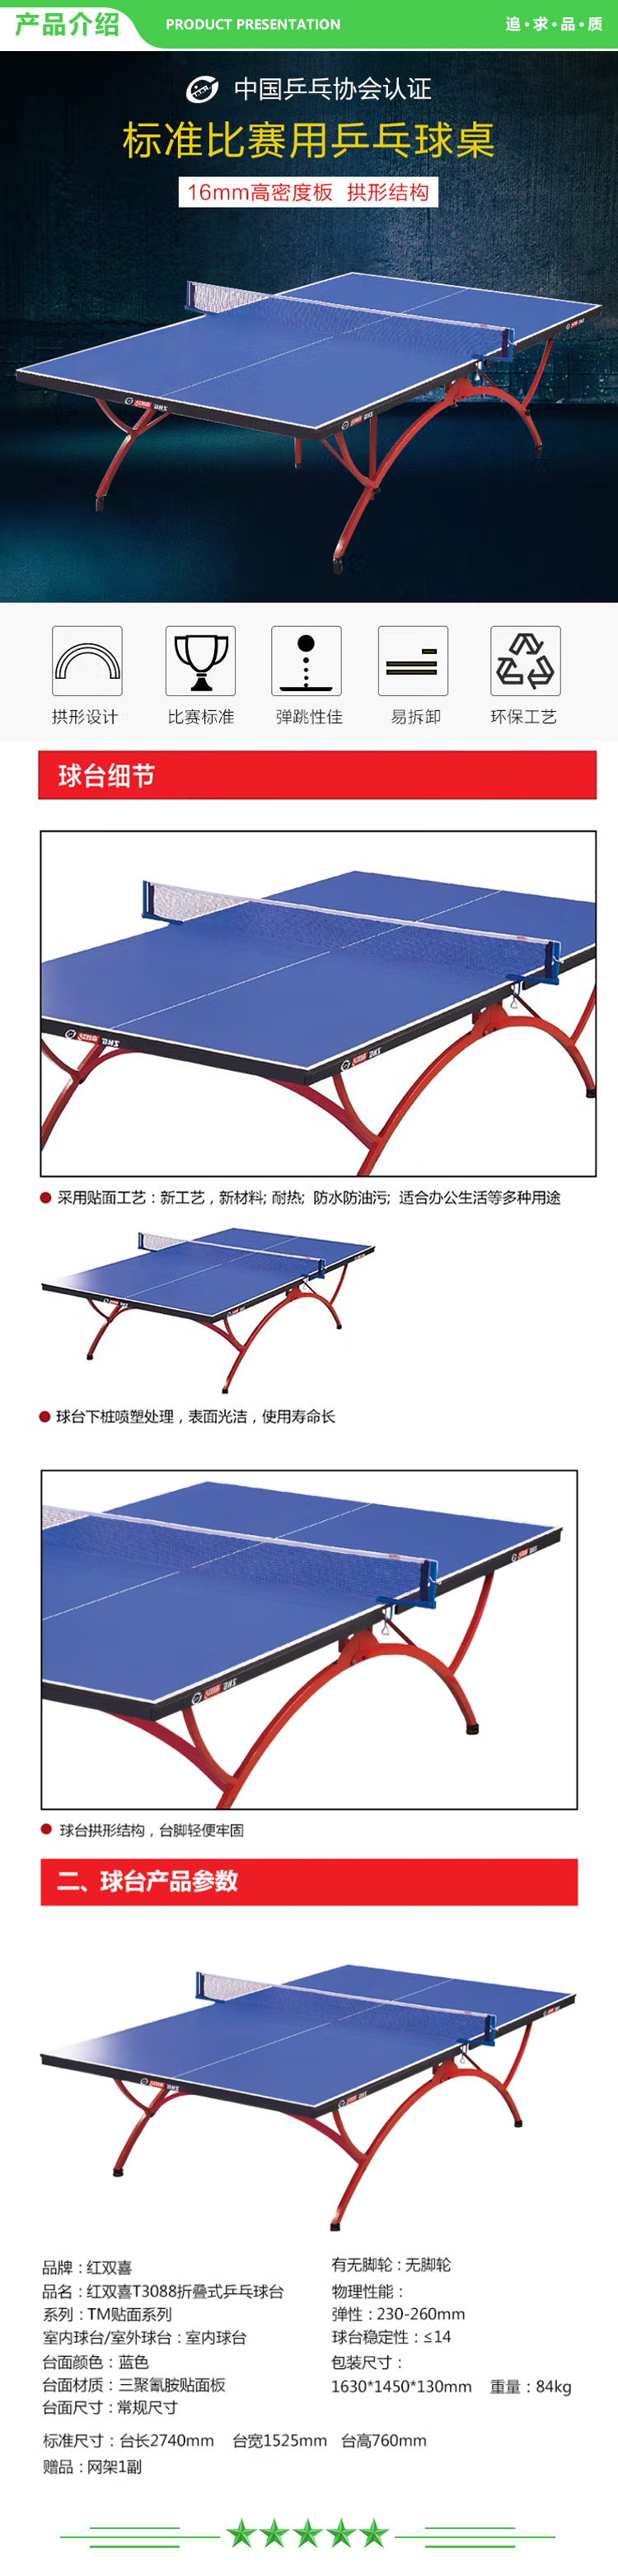 红双喜 DHS DXBN003-1(T3088) 乒乓球桌室内乒乓球台训练比赛用乒乓球案子附网架 .jpg